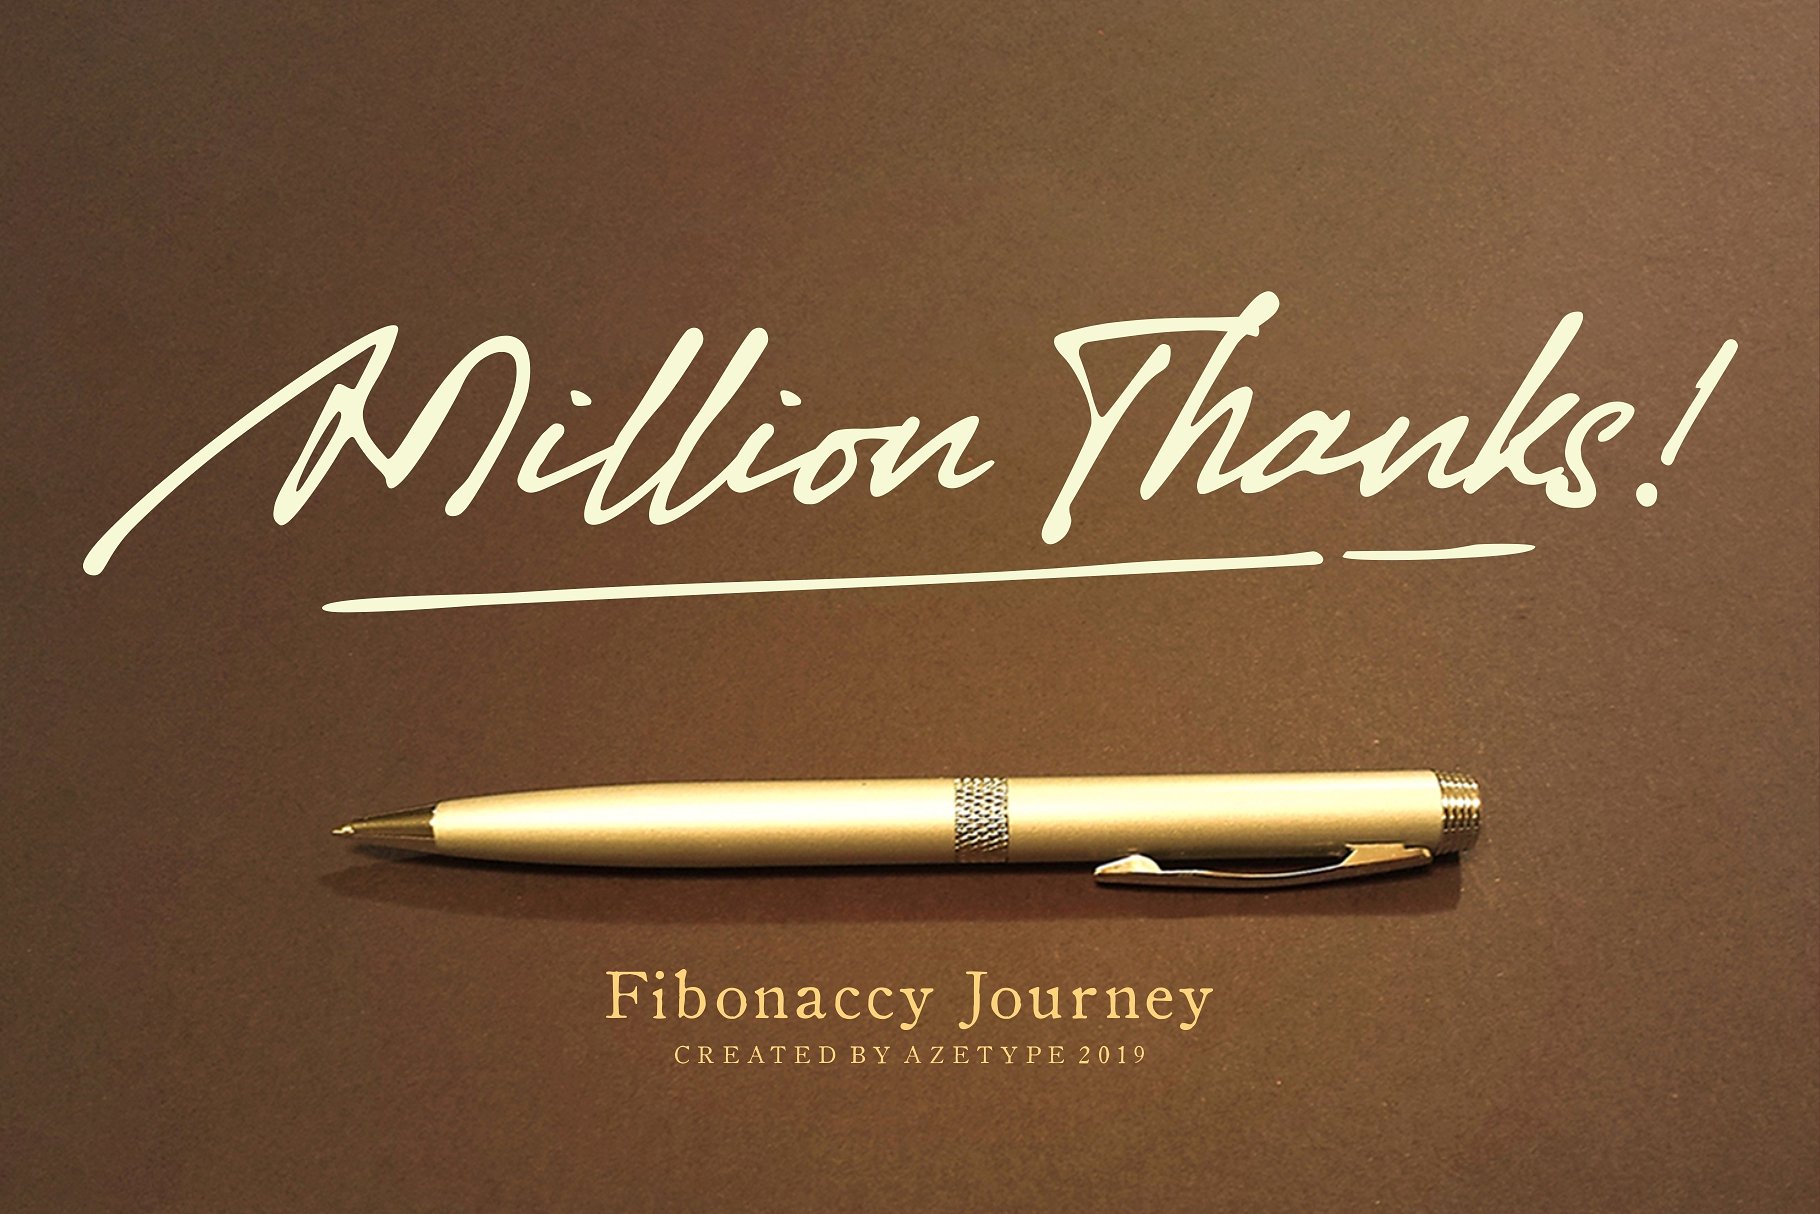 Fibonaccy Journey